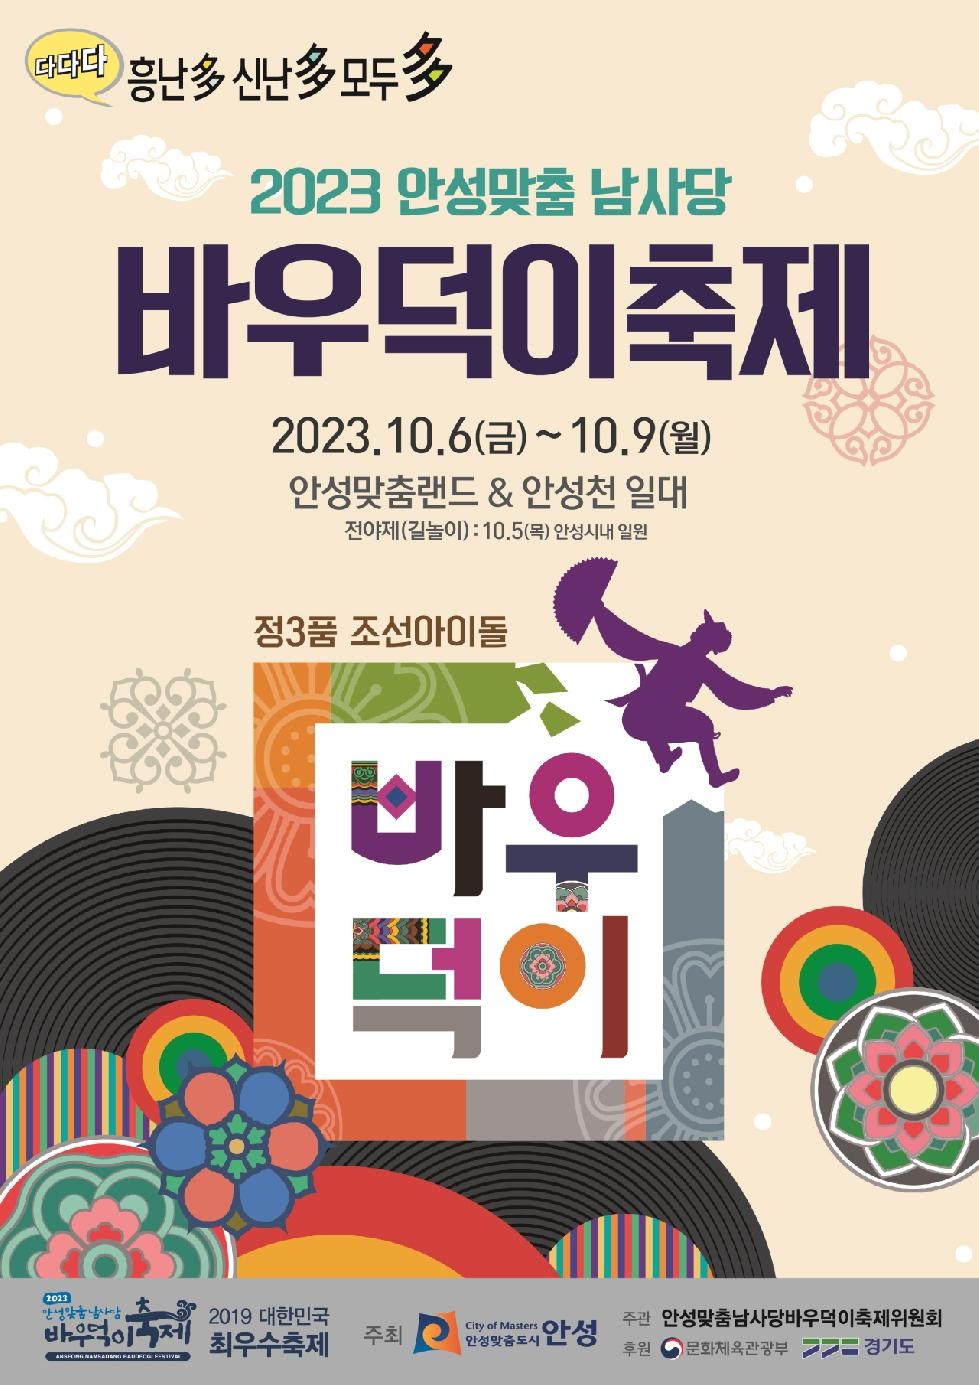 2023 안성맞춤남사당 바우덕이 축제 “먹거리장터” 운영업소 모집